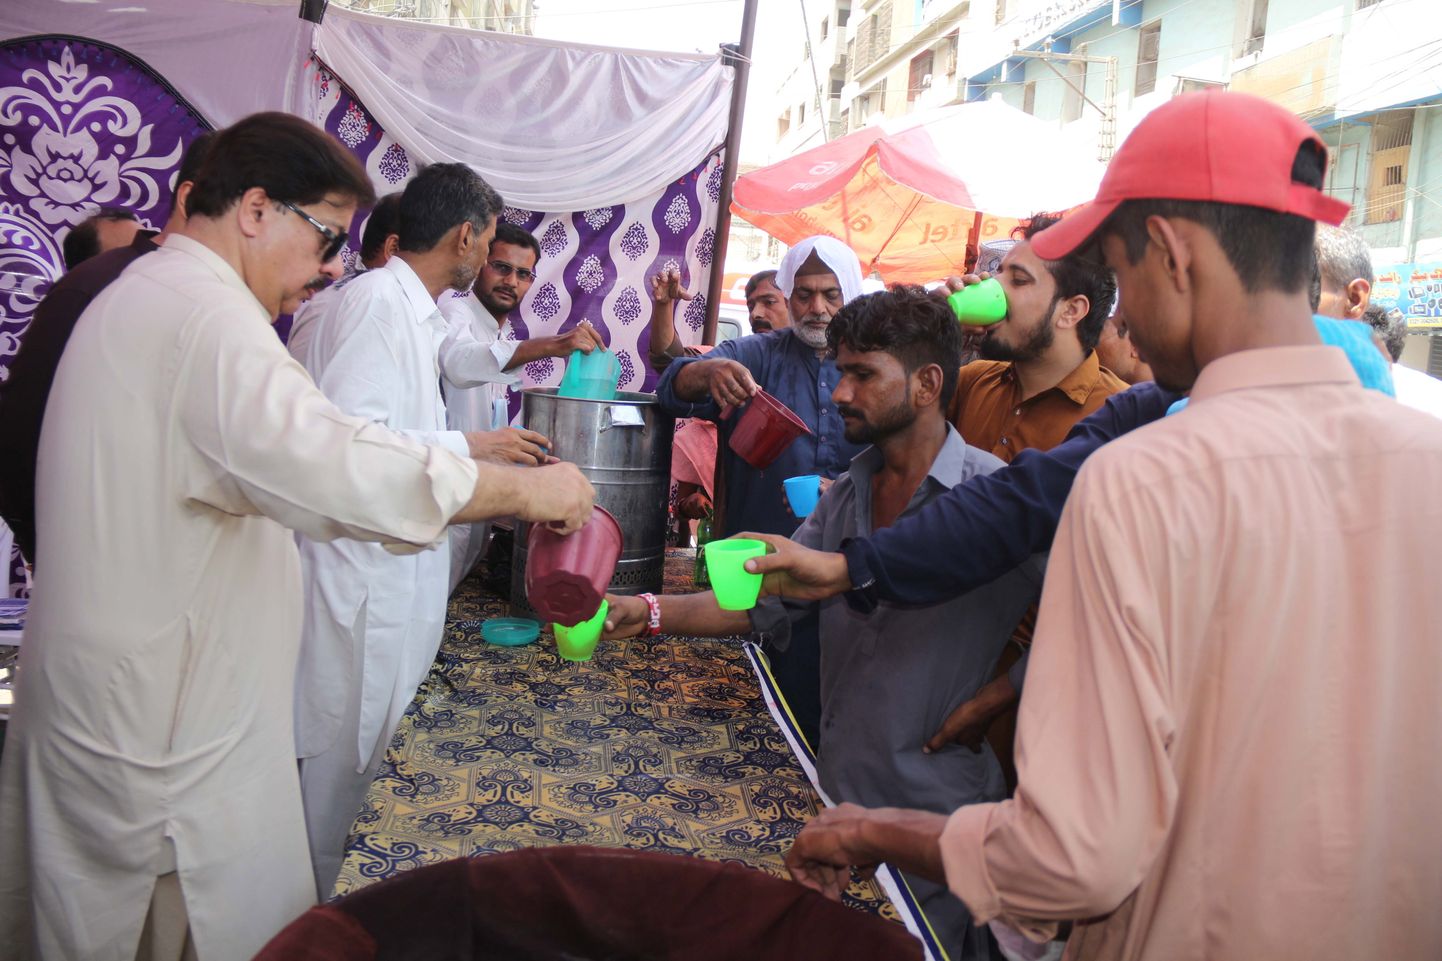 Pakistanis Hyderabadis jagatakse inimestele kuuma leevendamiseks tasuta jooke.